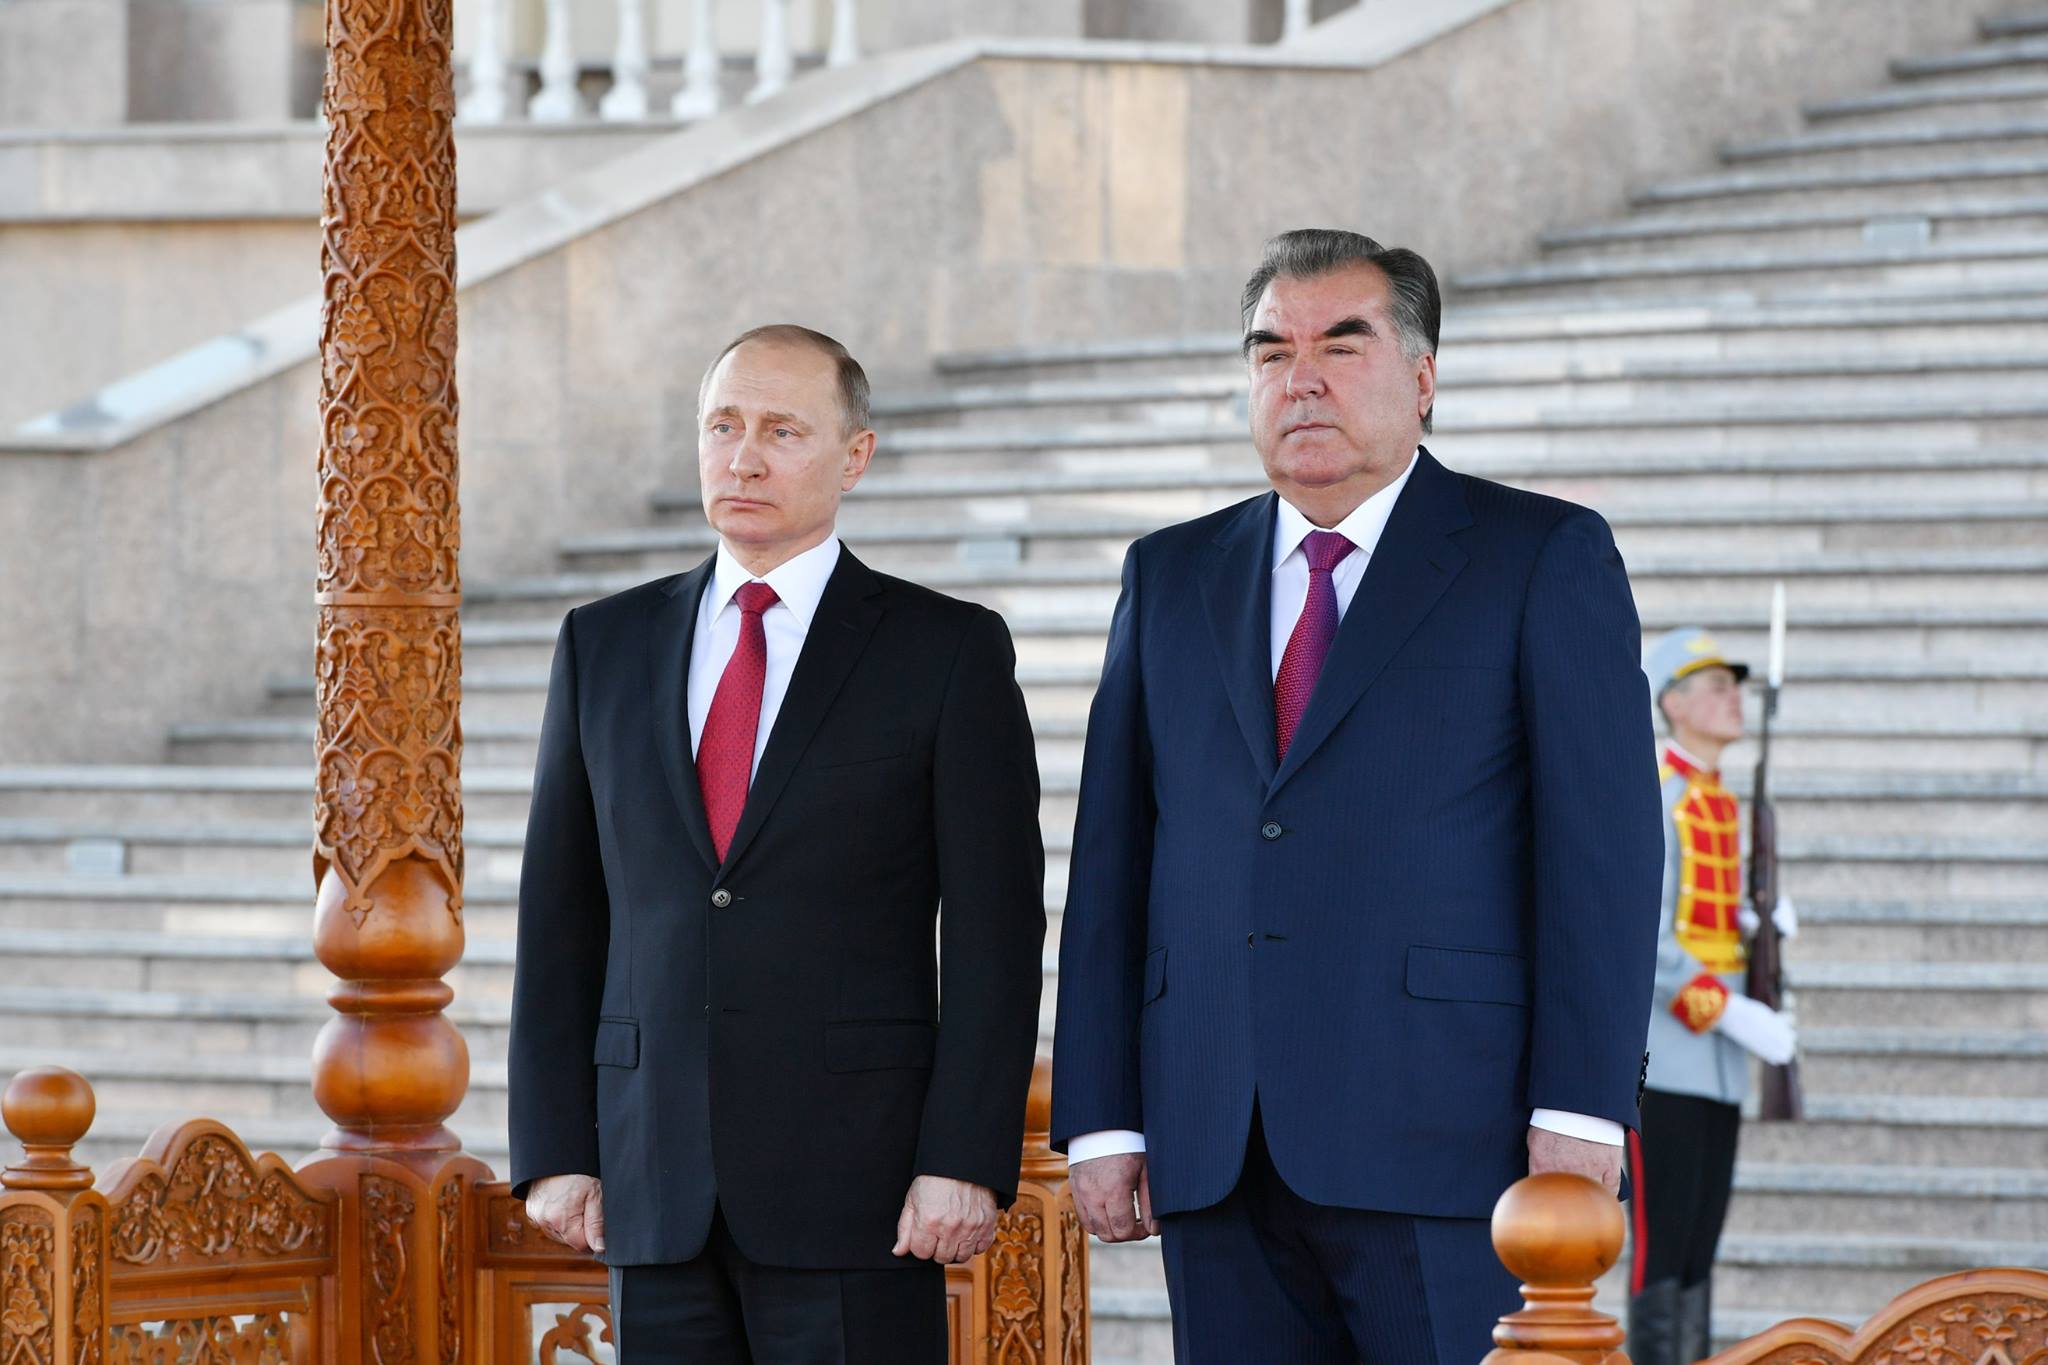 Заявление президента таджикистана. Эмомали Рахмон.